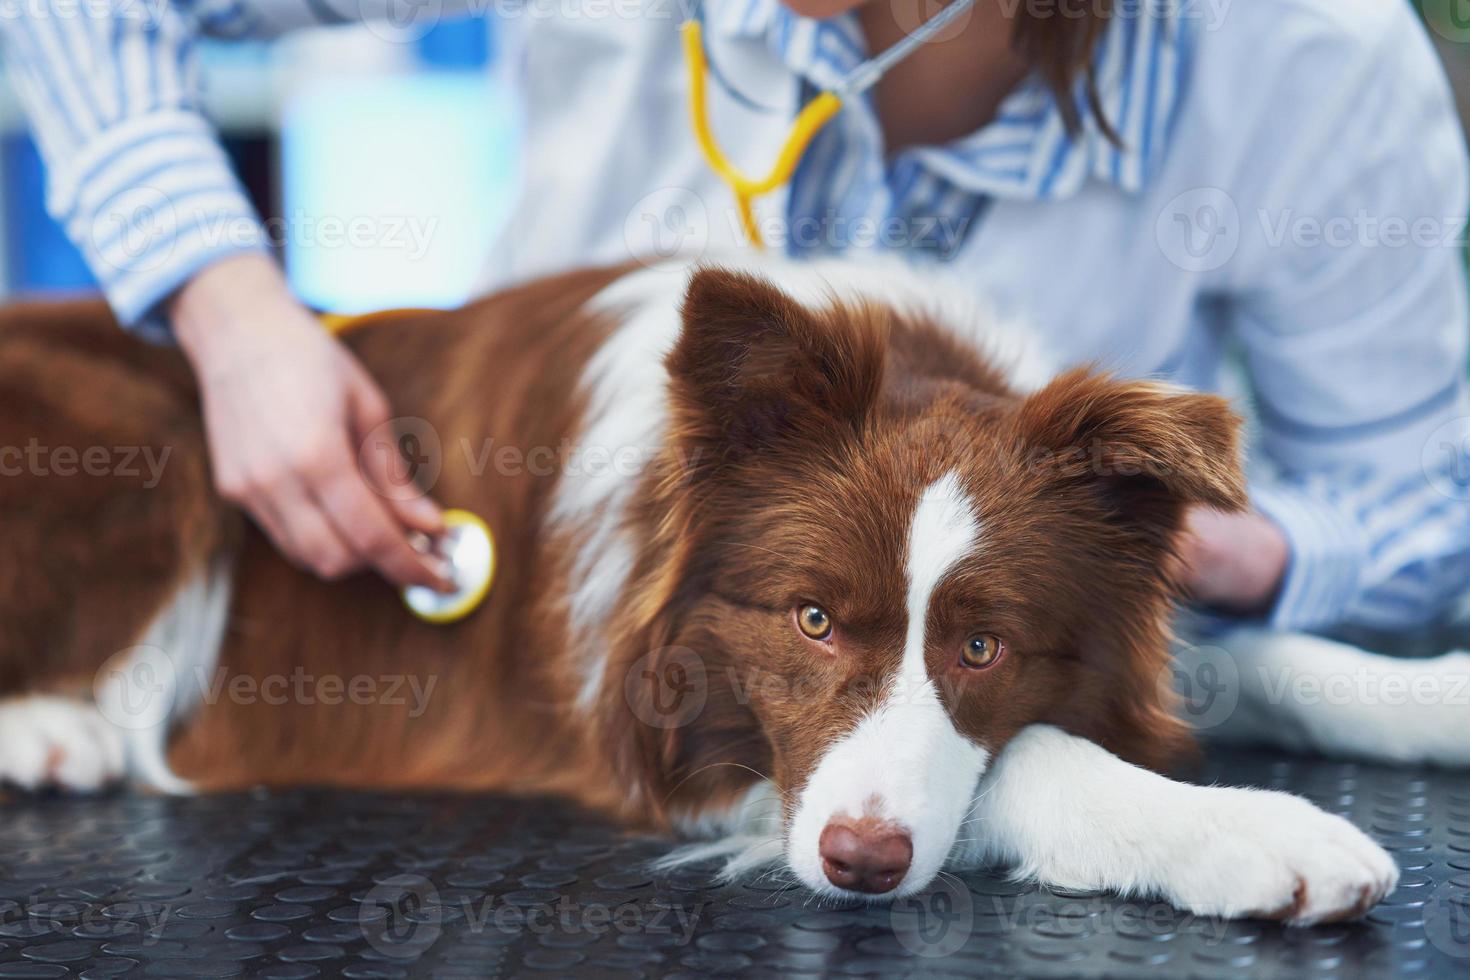 perro border collie marrón durante la visita al veterinario foto